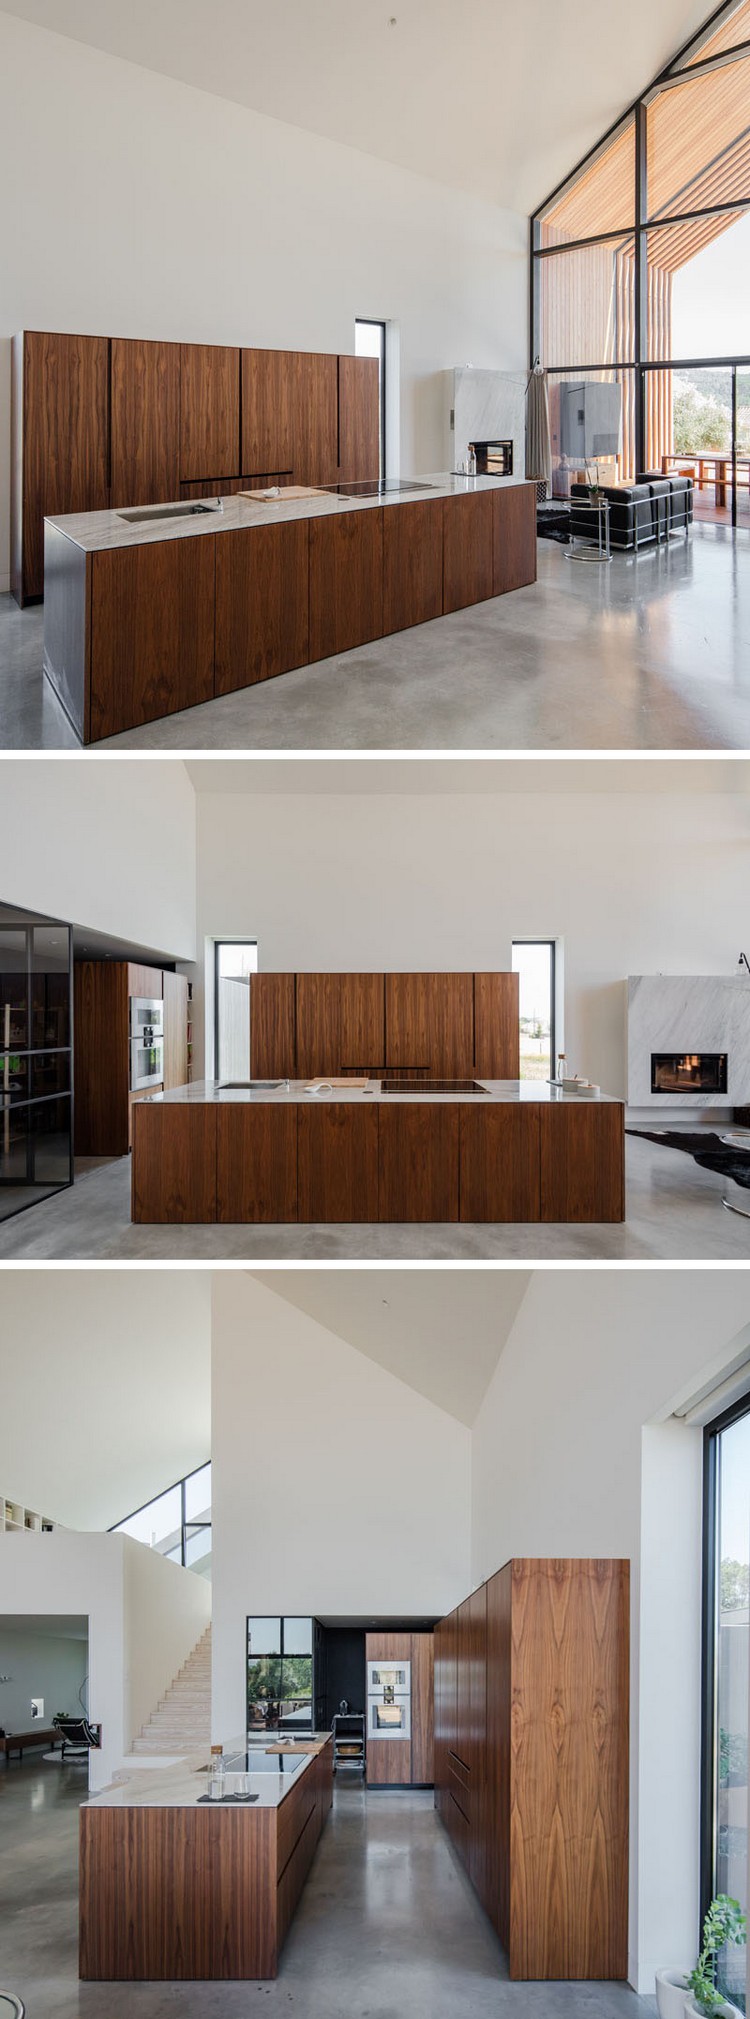 fenêtre sur mesure cuisine bois chêne design moderne maison architecte portugaise